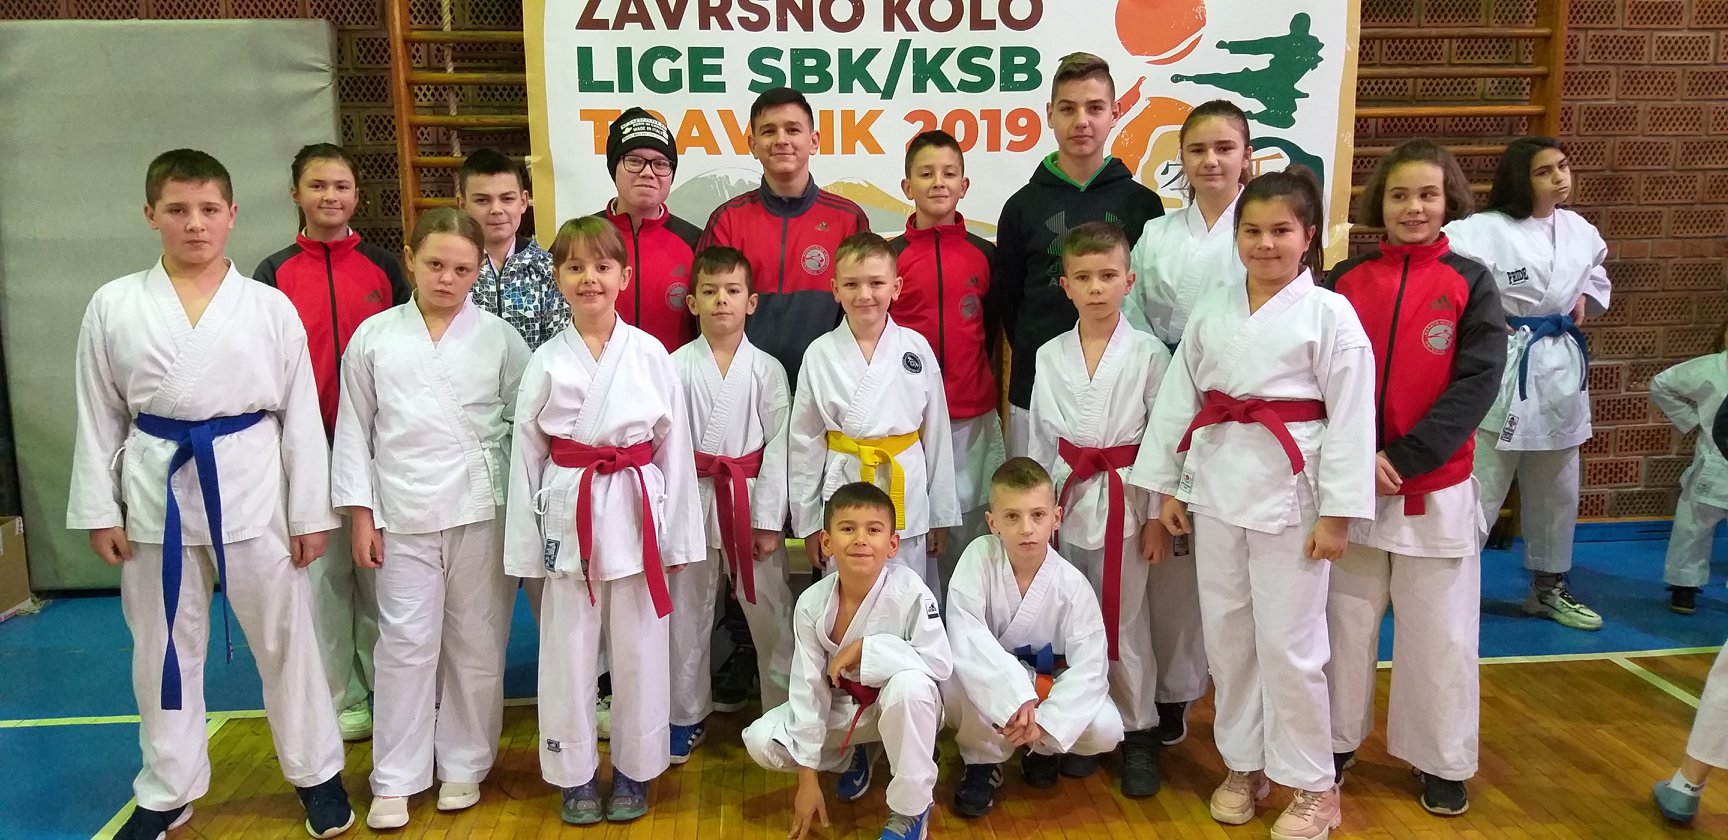 6.kolo kantonalne karate lige SBK/KSB , Travnik